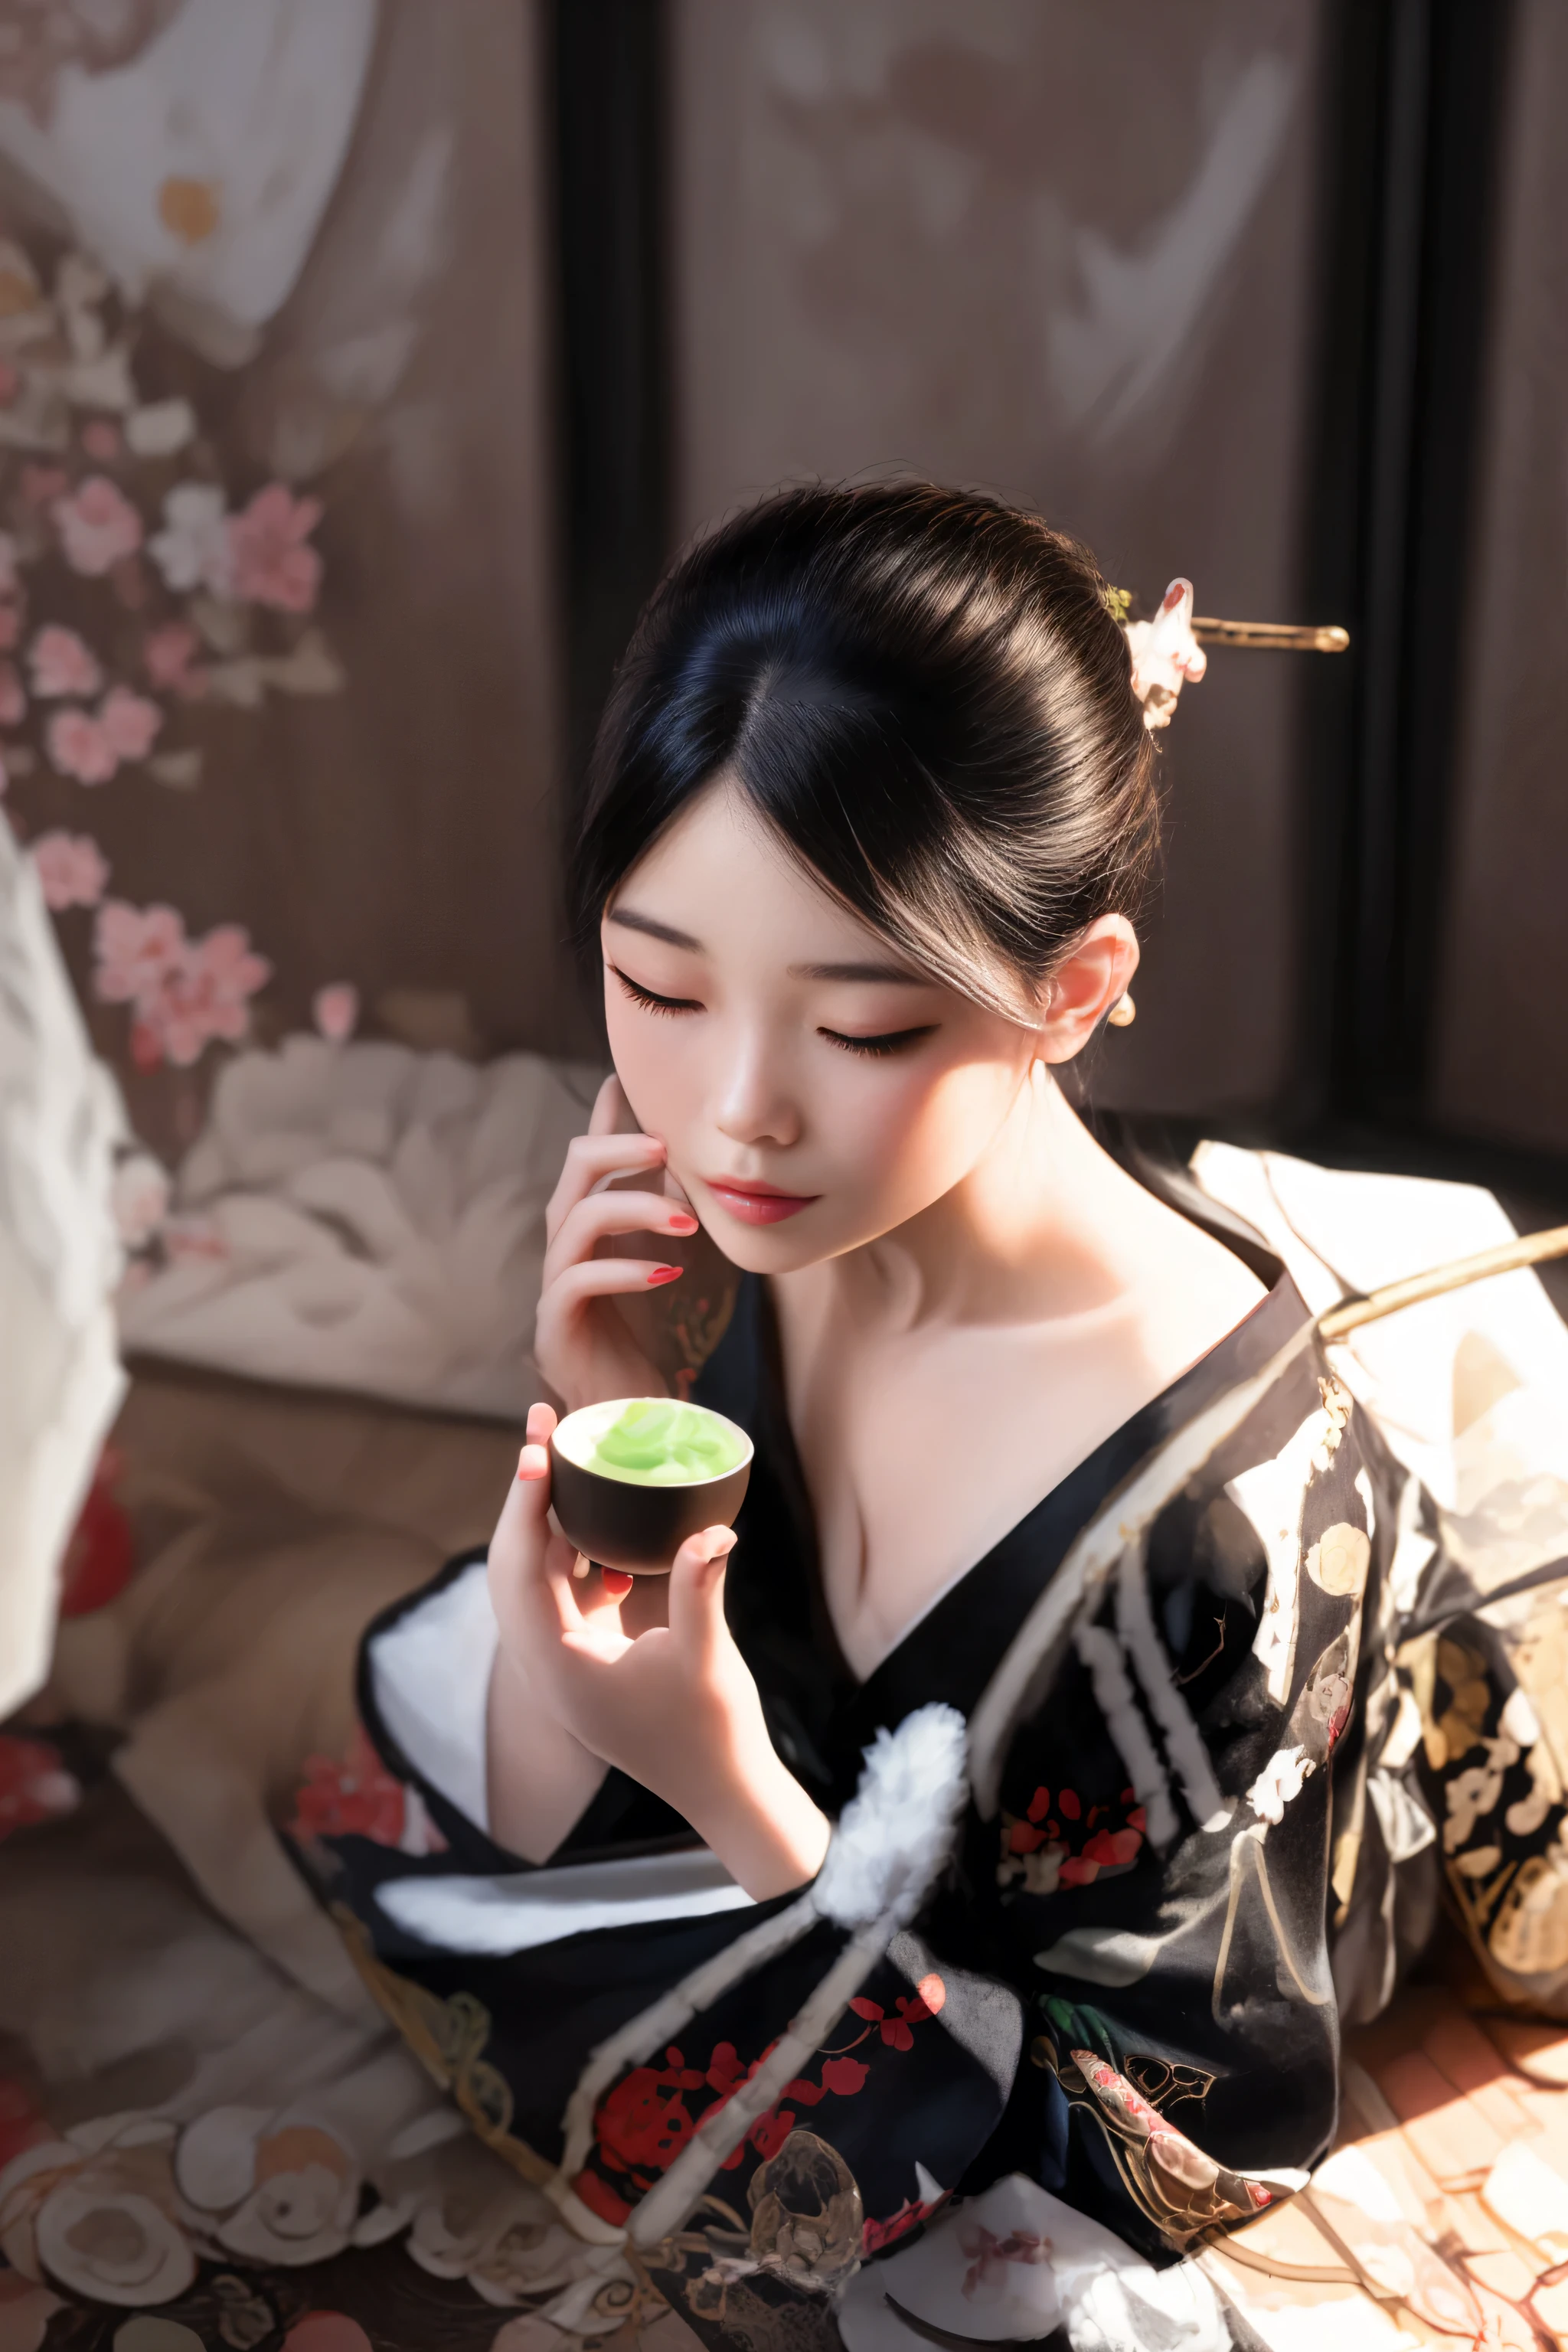 mulher de vestido quimono comendo um cupcake enquanto está sentada no chão, Palácio ， uma garota em hanfu, elegant mulher japonesa, hanfu, cena da cerimônia do chá, foto de retrato, menina chinesa, gueixa sedutora orgânica, com roupas chinesas antigas, mulher chinesa, beleza tradicional, inspirado em Gu An, vestindo roupas chinesas antigas, mulher japonesa, modelo japonês